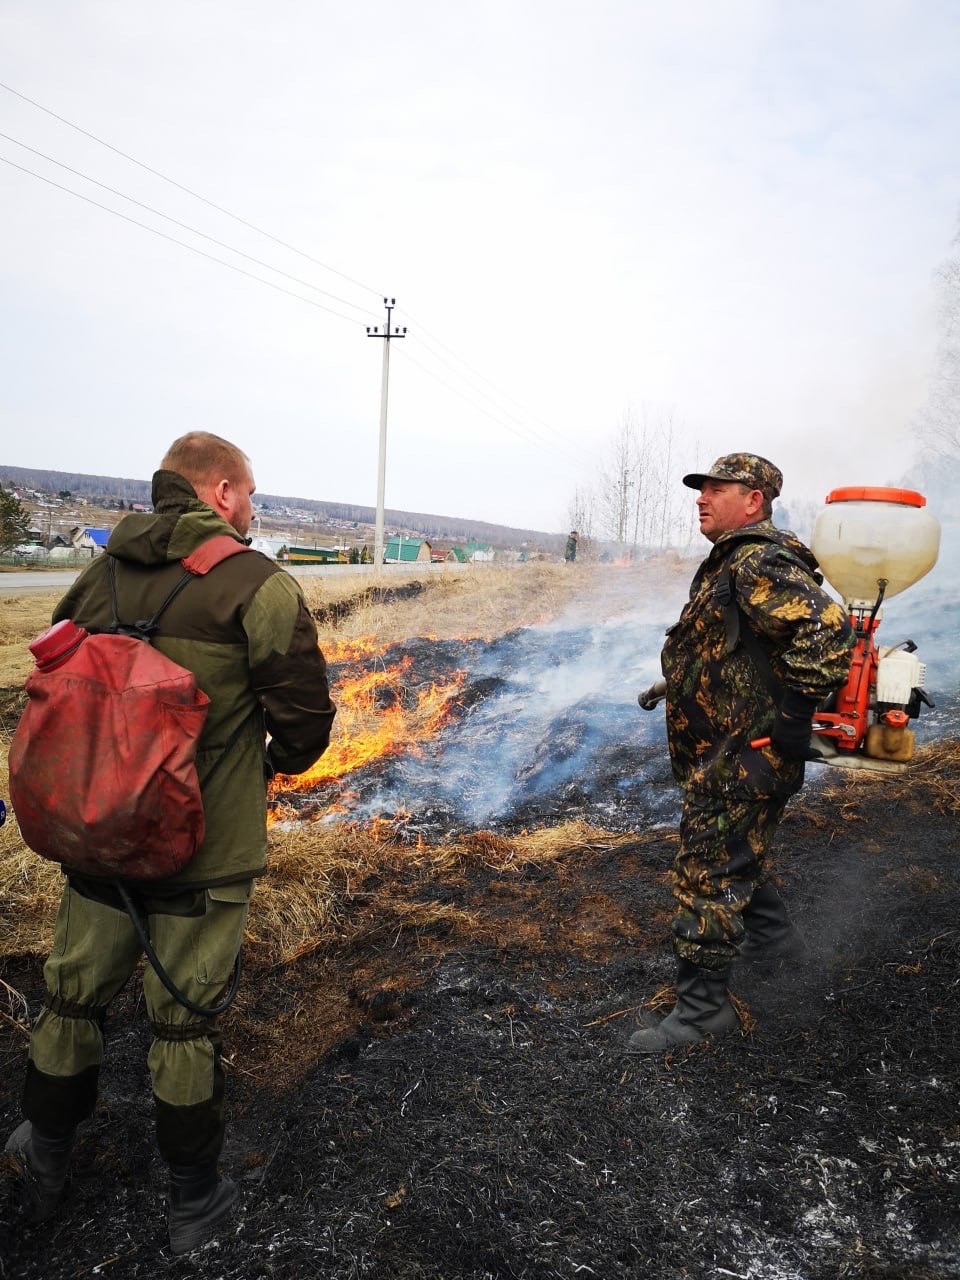 Опасность значительно возросла: более 50 возгораний на почве произошло в Кузбассе за день